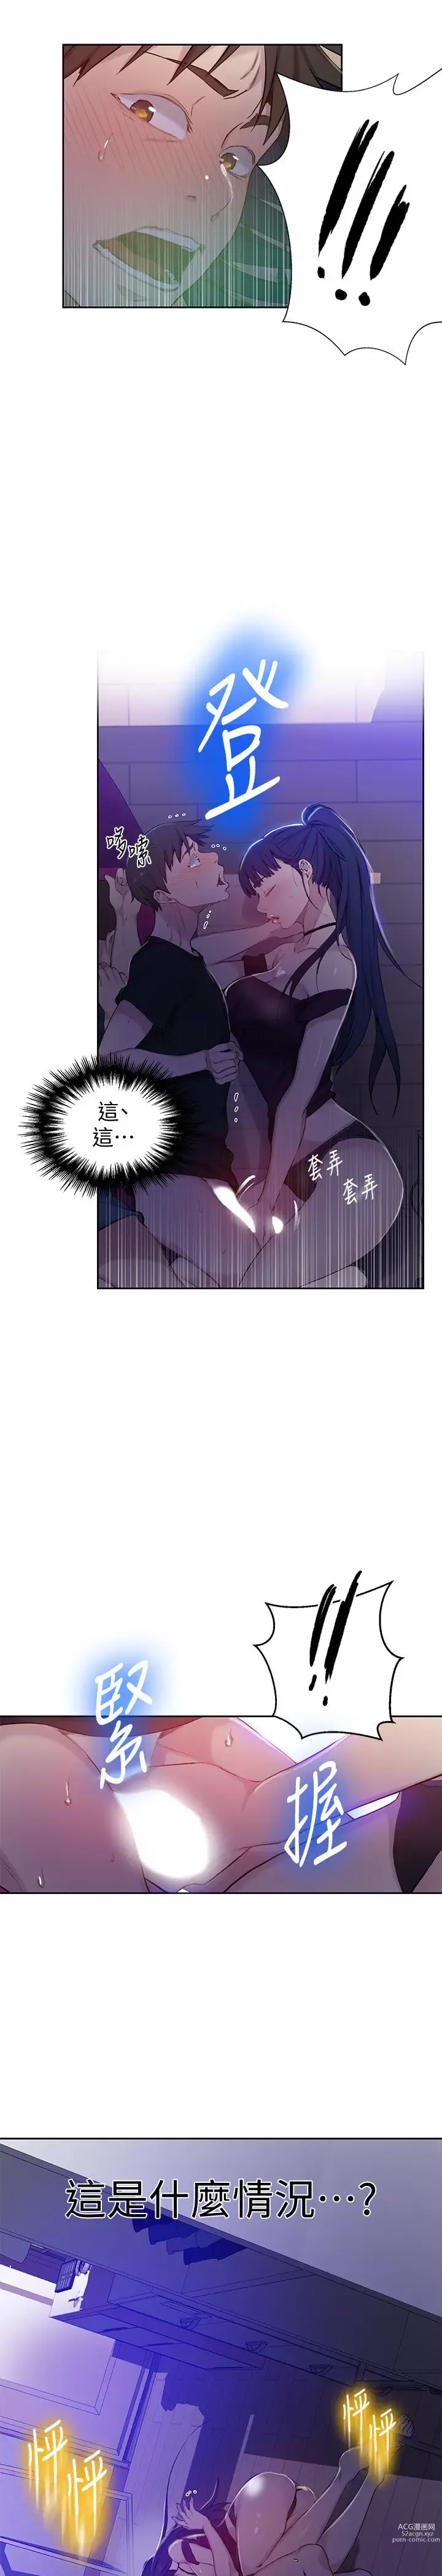 Page 4 of manga 秘密教学/The Class Of The Secret 61-120